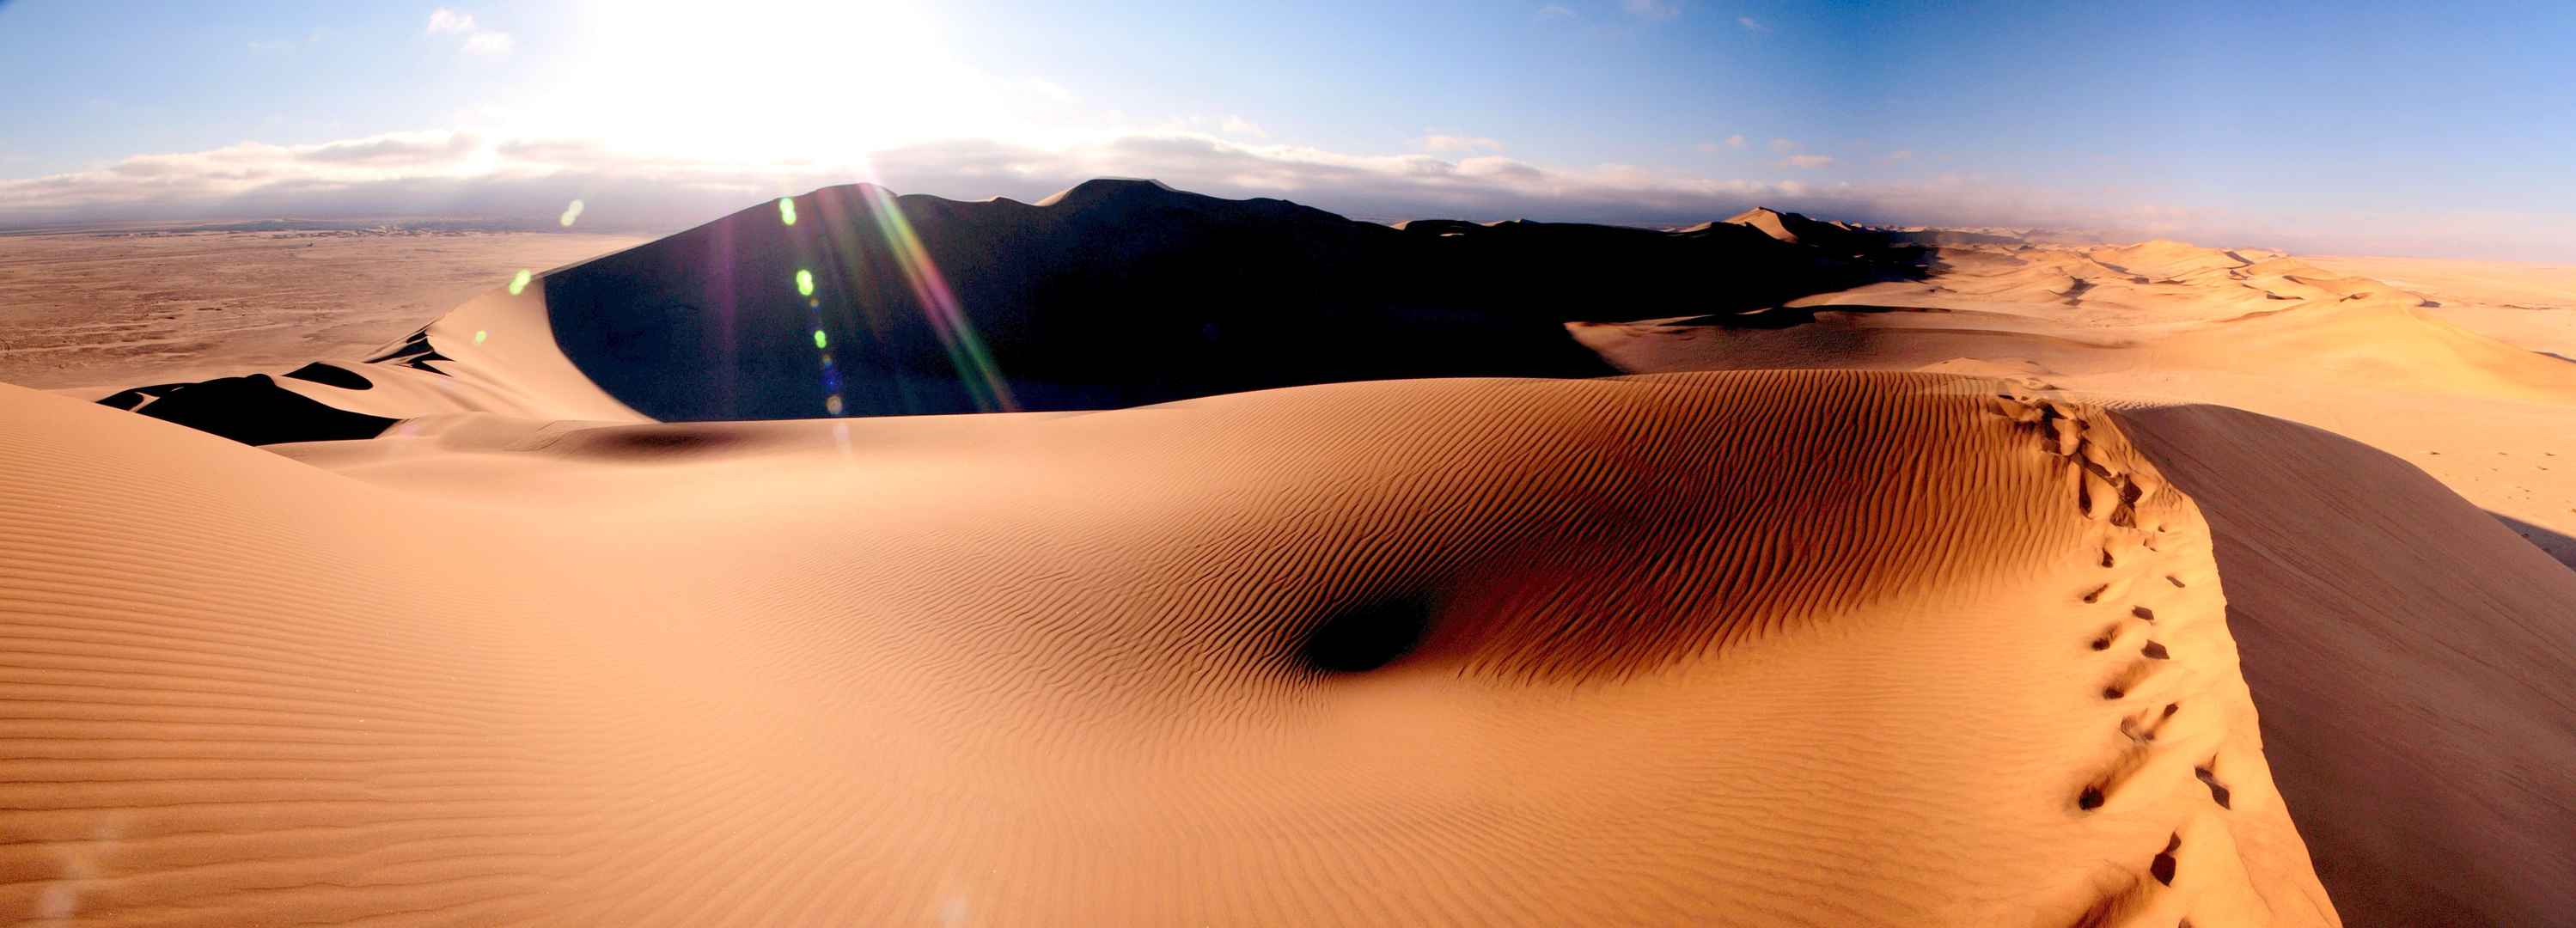 热带沙漠风景7K壁纸-